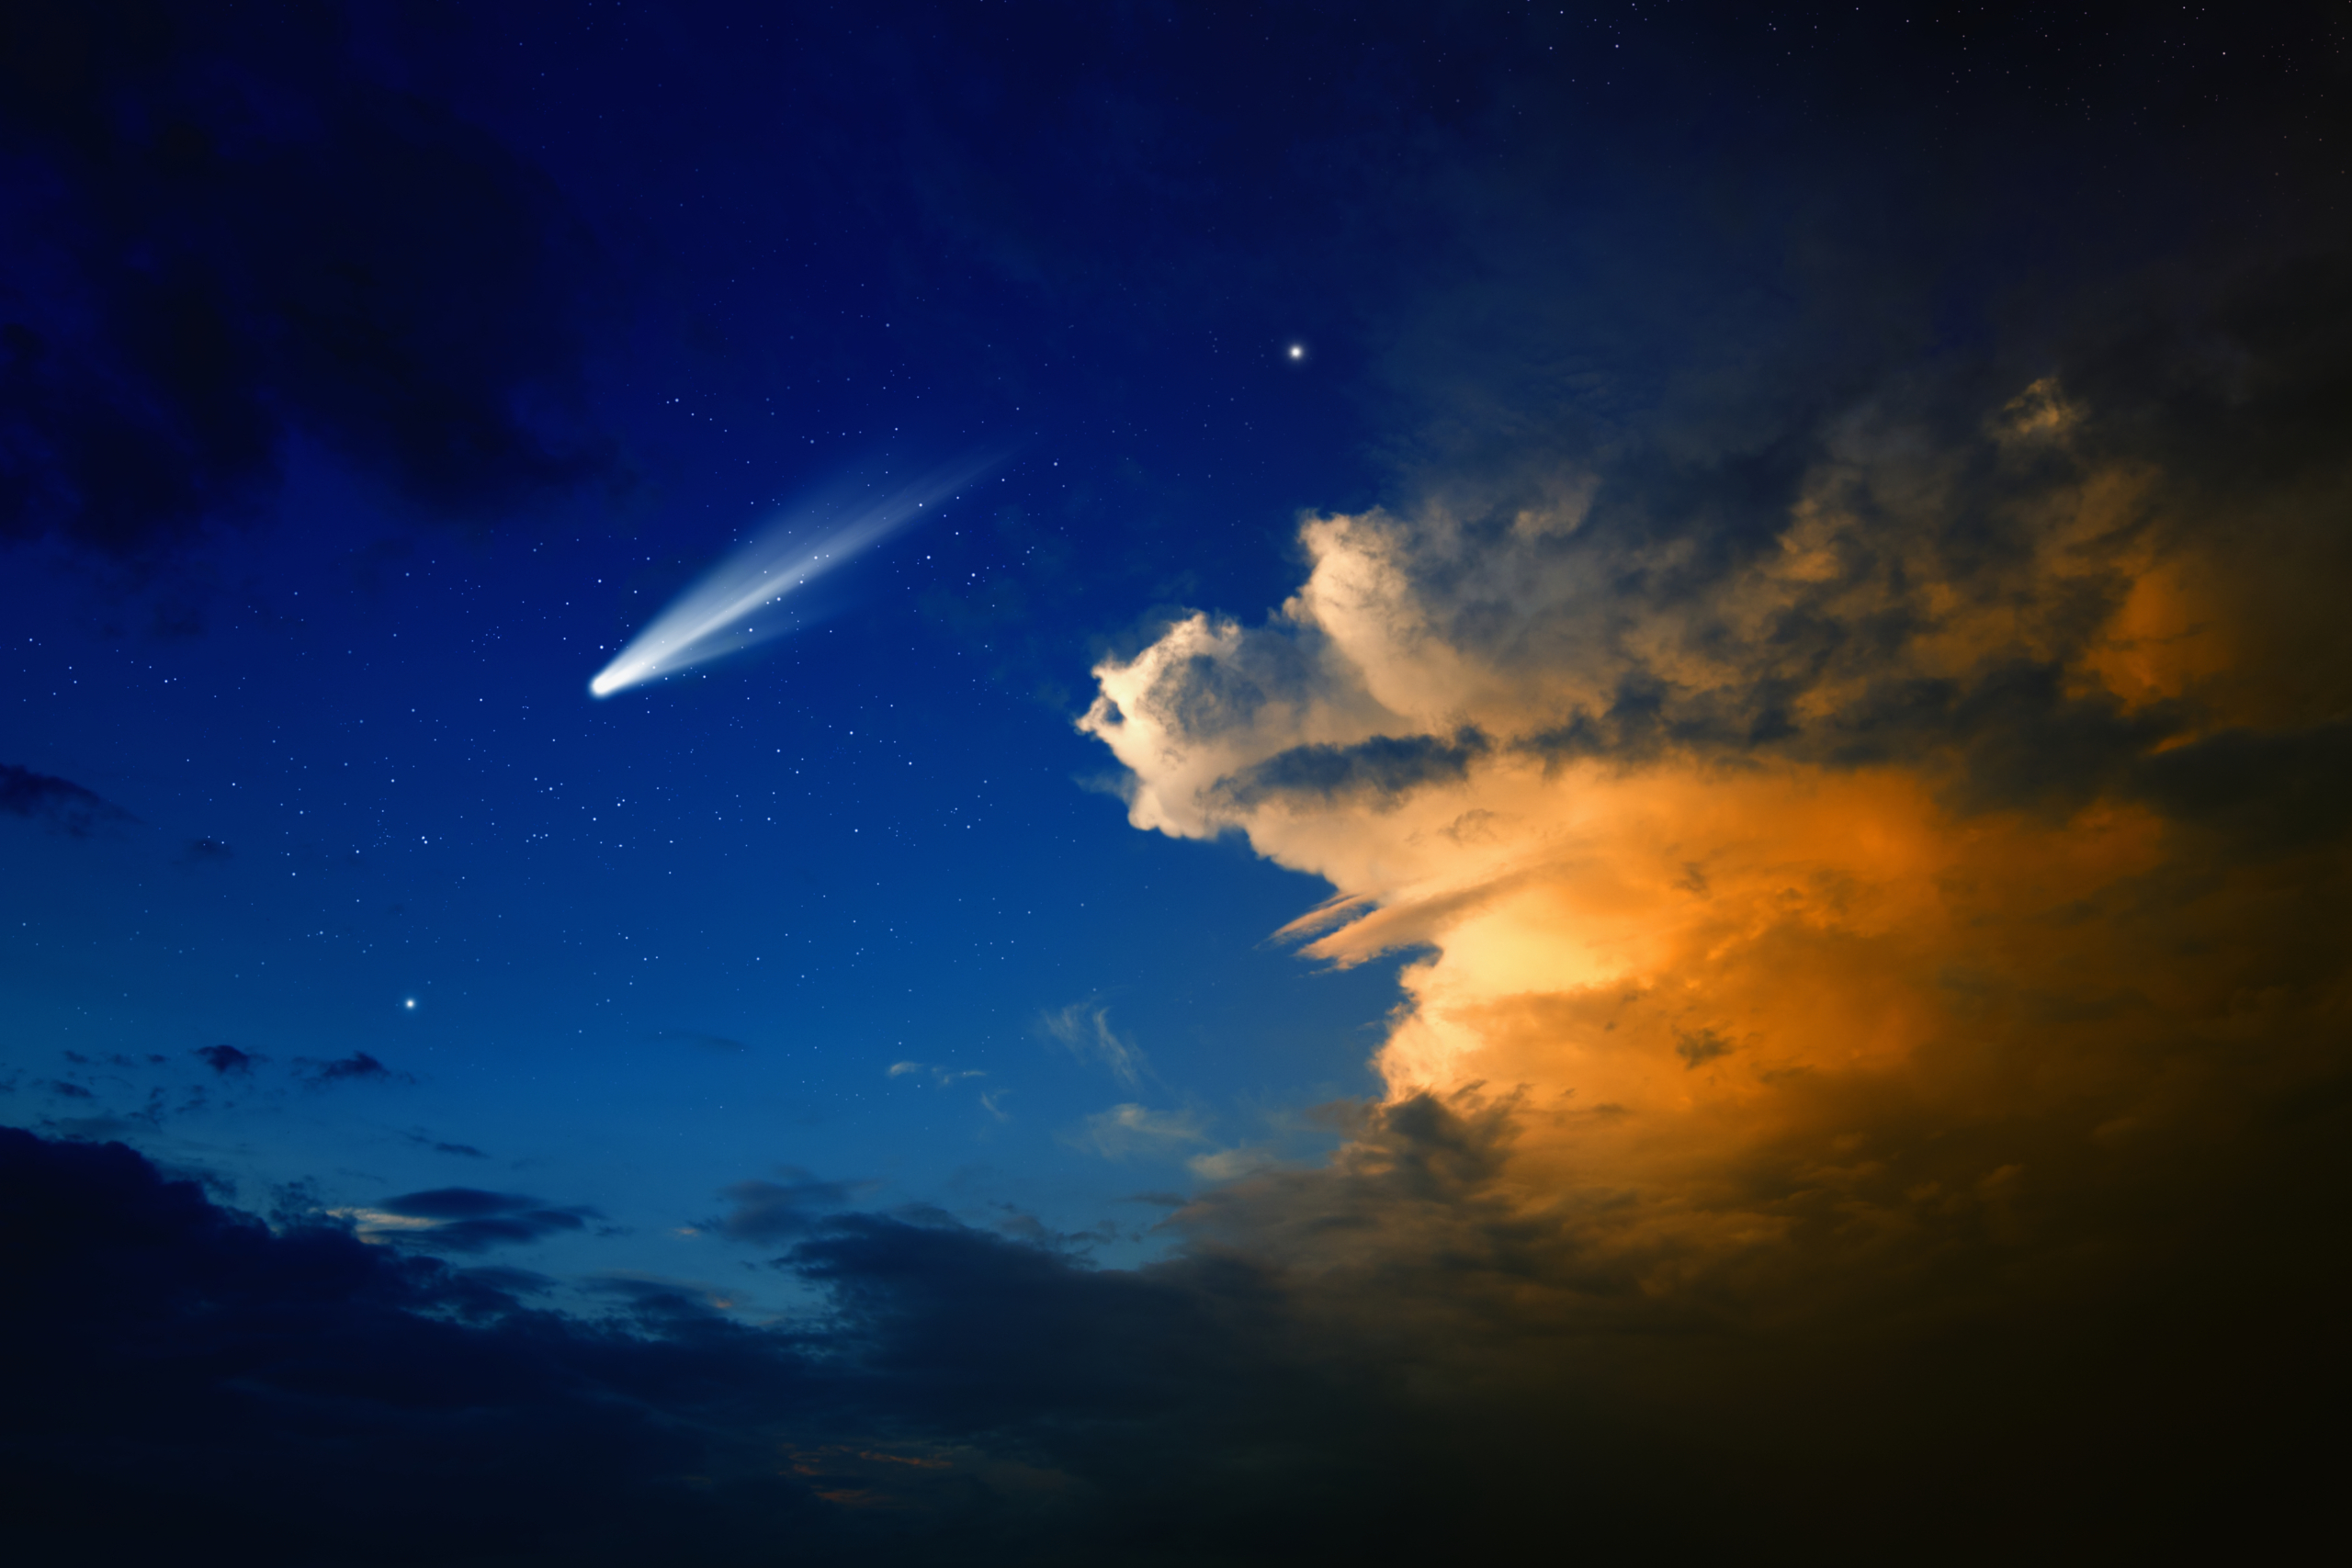 Ảnh tư liệu sao chổi. (Ảnh: Shutterstock)